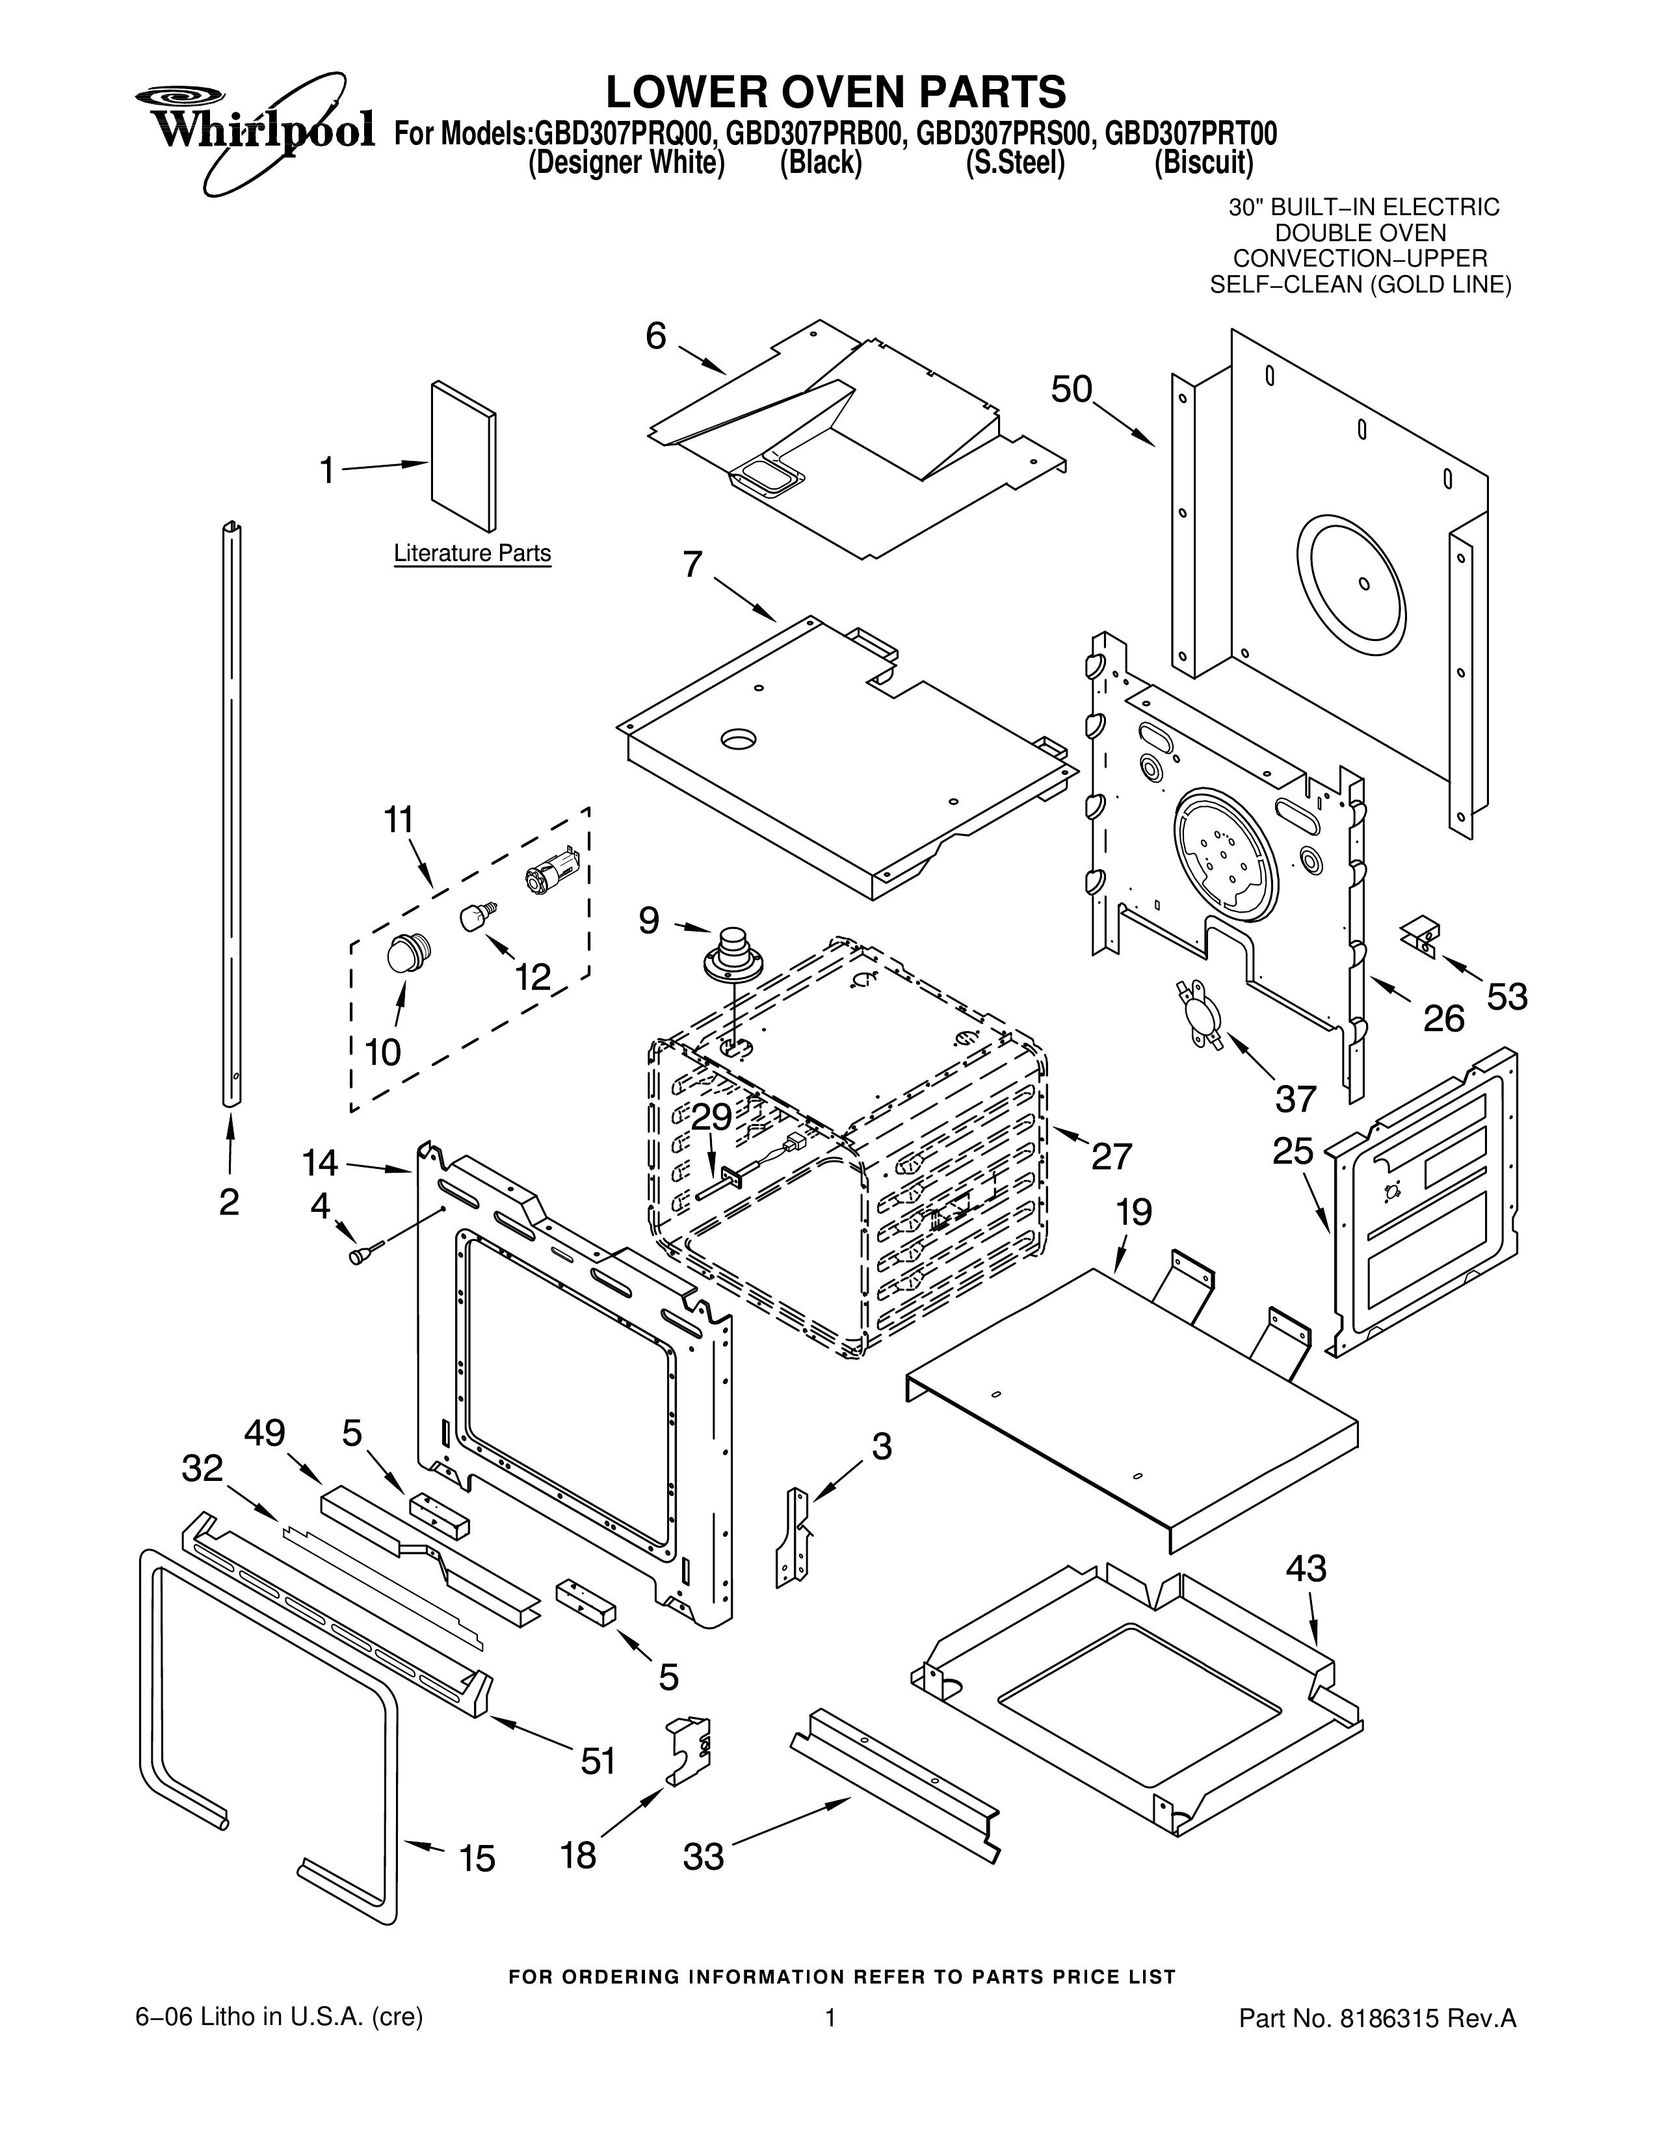 Whirlpool GBD307PRT00 Oven User Manual